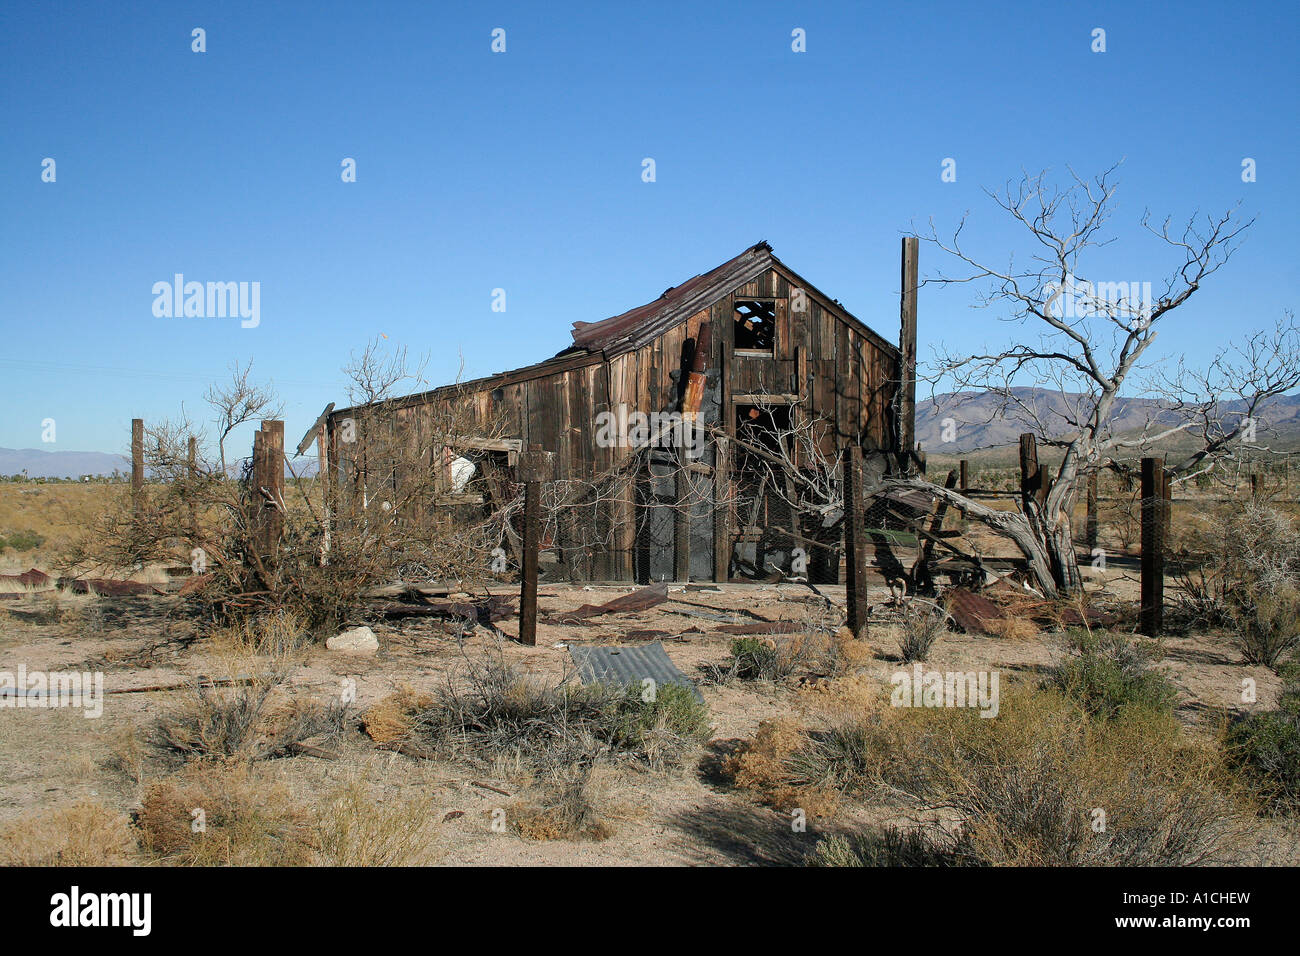 Deserted hut in Mojave desert, California, USA. Stock Photo